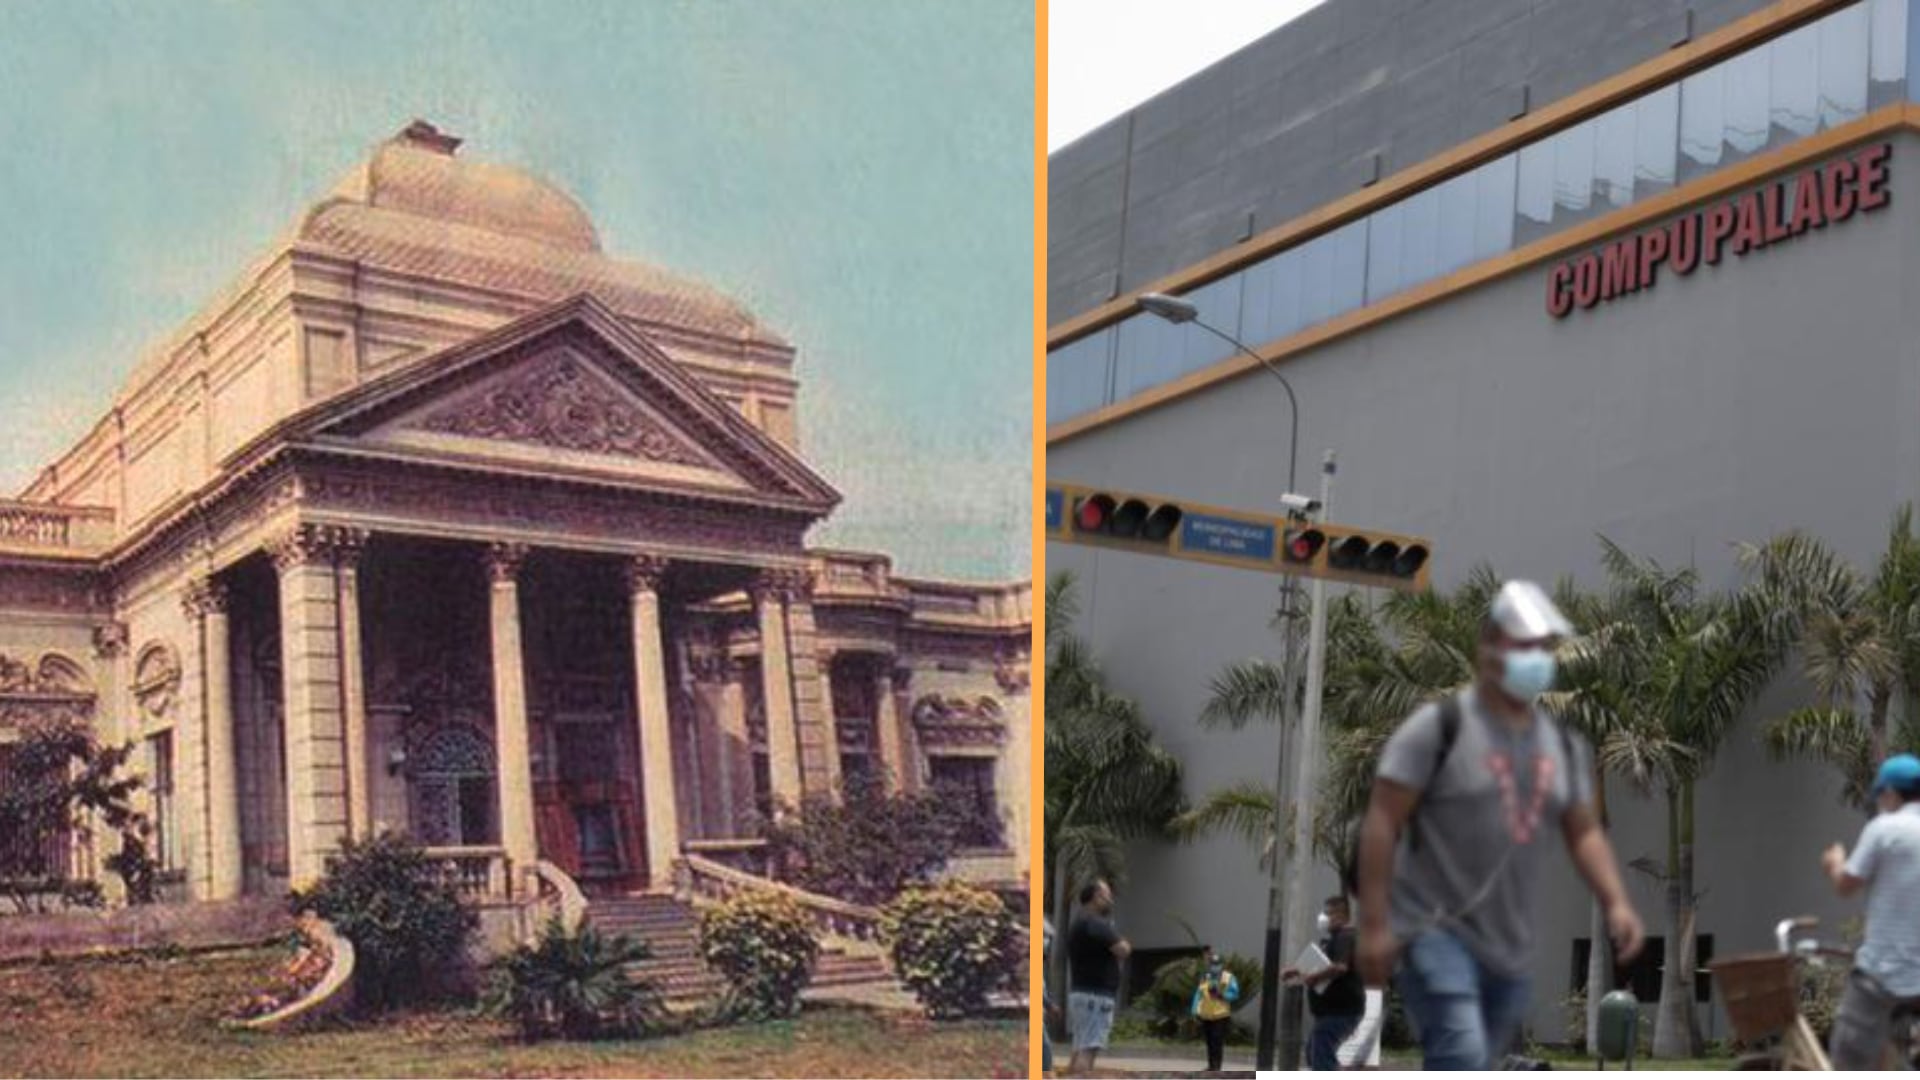 Su demolición para la construcción de CompuPalace generó controversia sobre la preservación del patrimonio. (Infobae: Historia del perú)